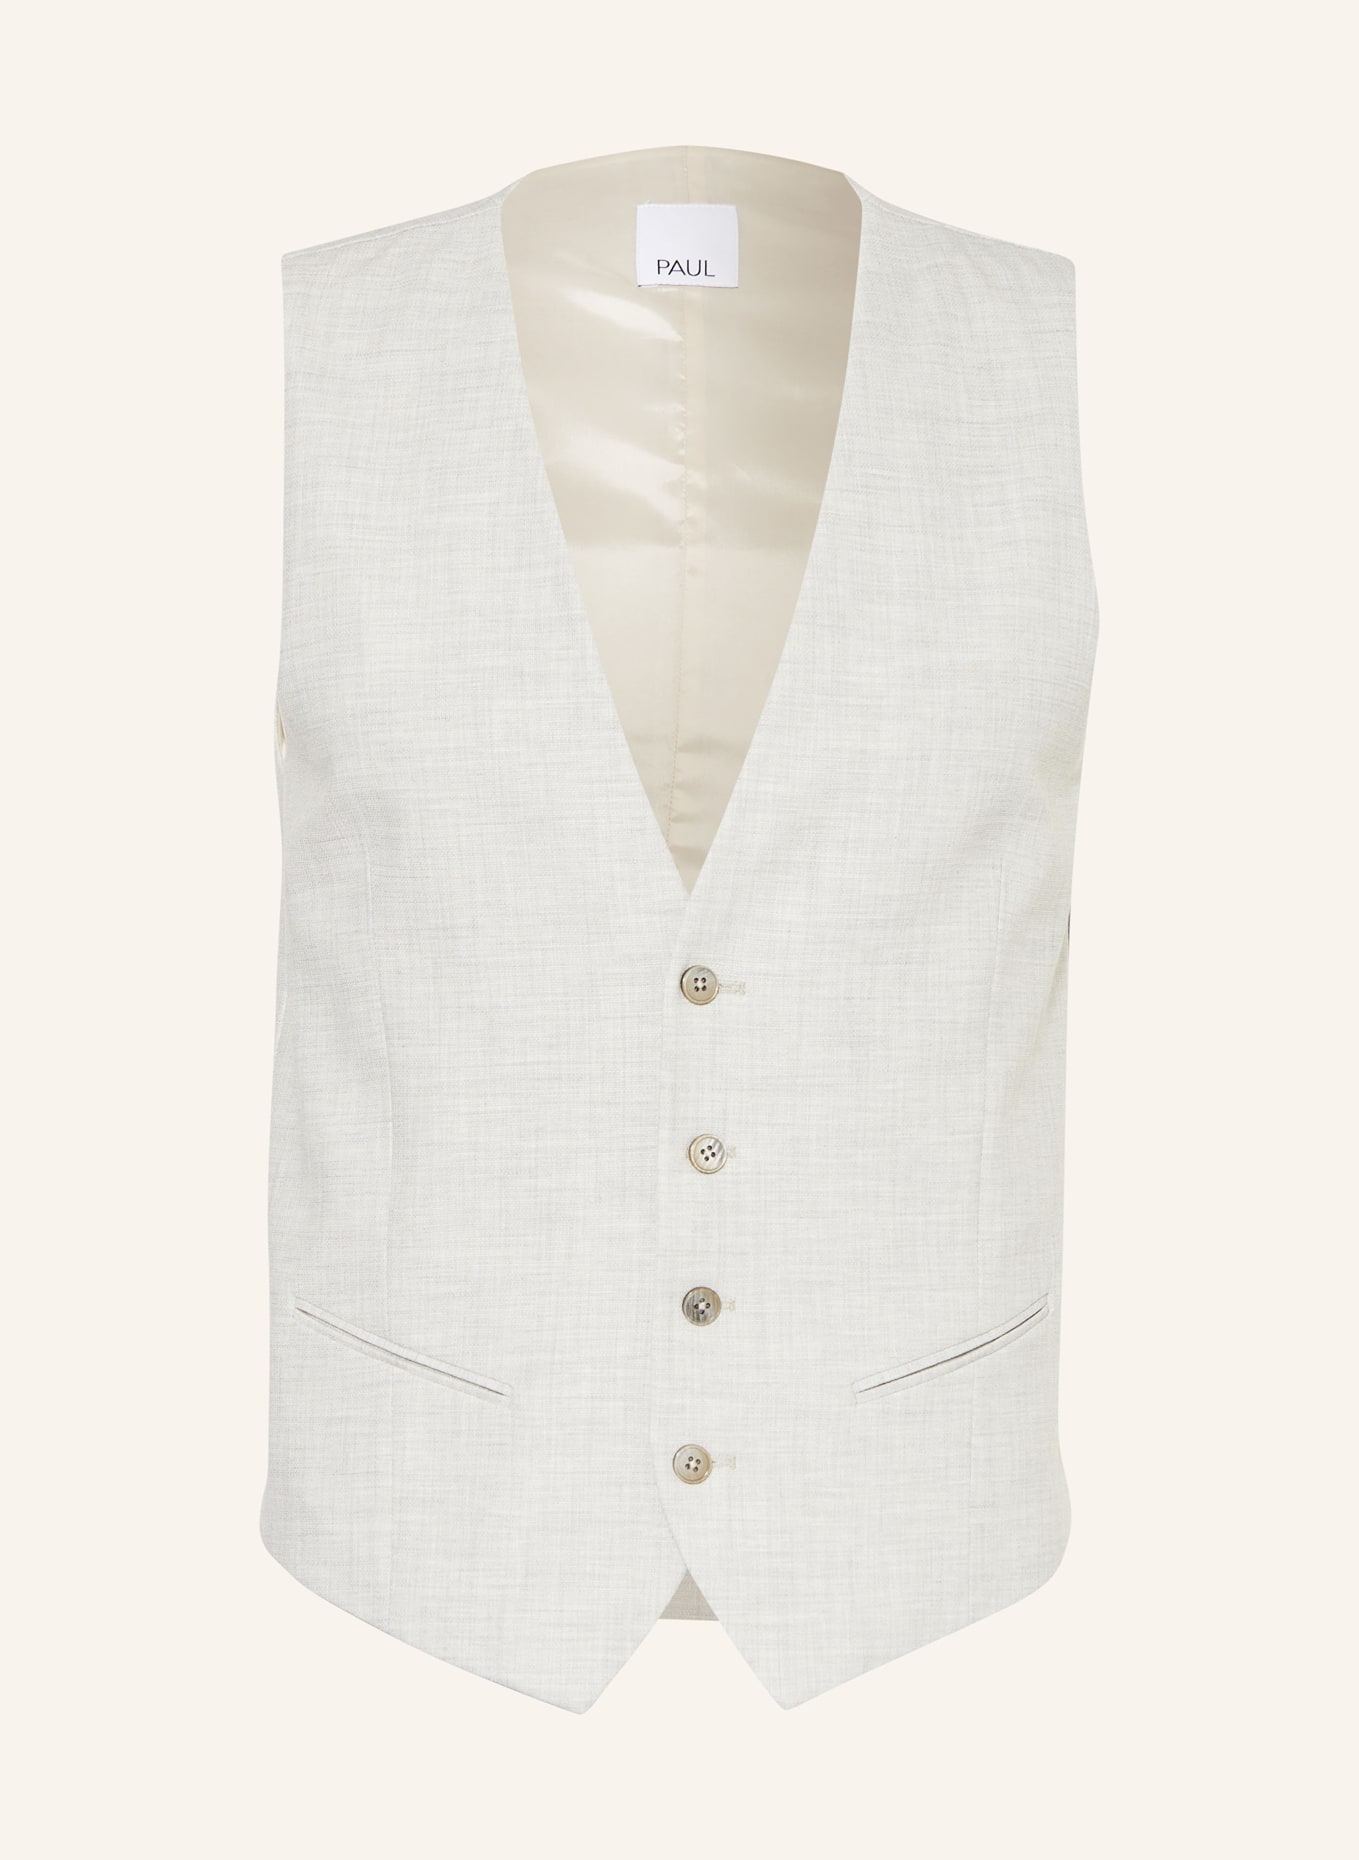 PAUL Suit vest extra slim fit, Color: LIGHT GRAY (Image 1)